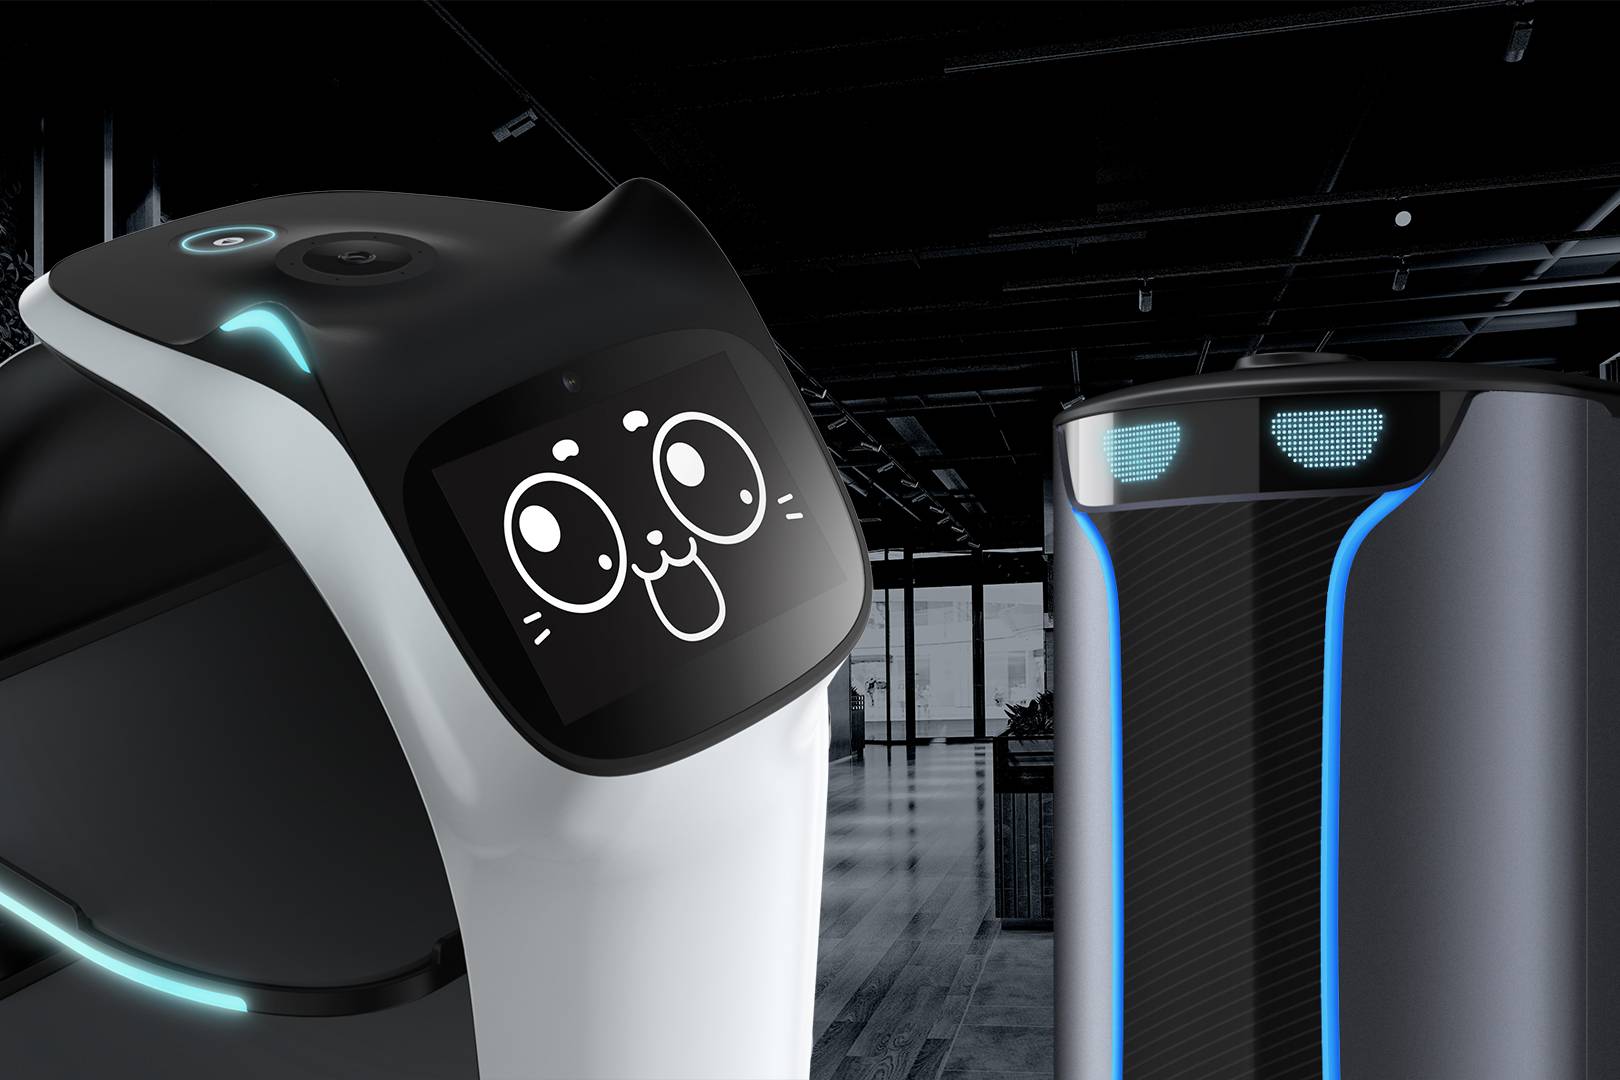 kamasys bietet jetzt die Serviceroboter BellaBot und HolaBot an